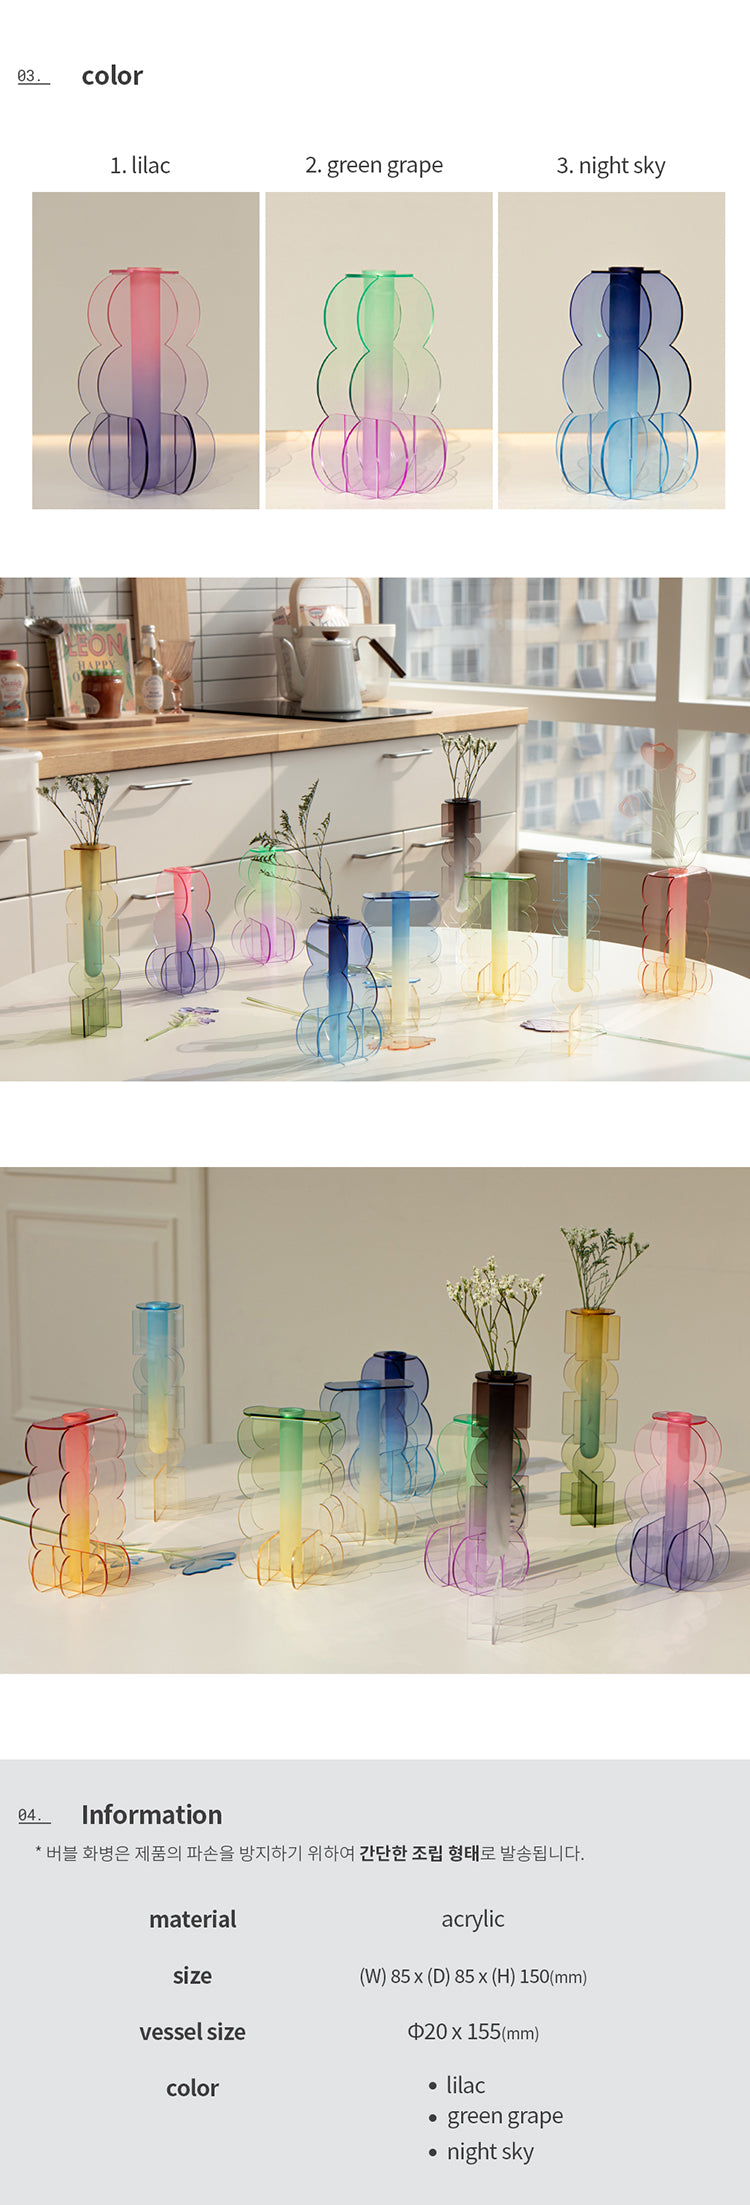 bubble vase - acrylic vase